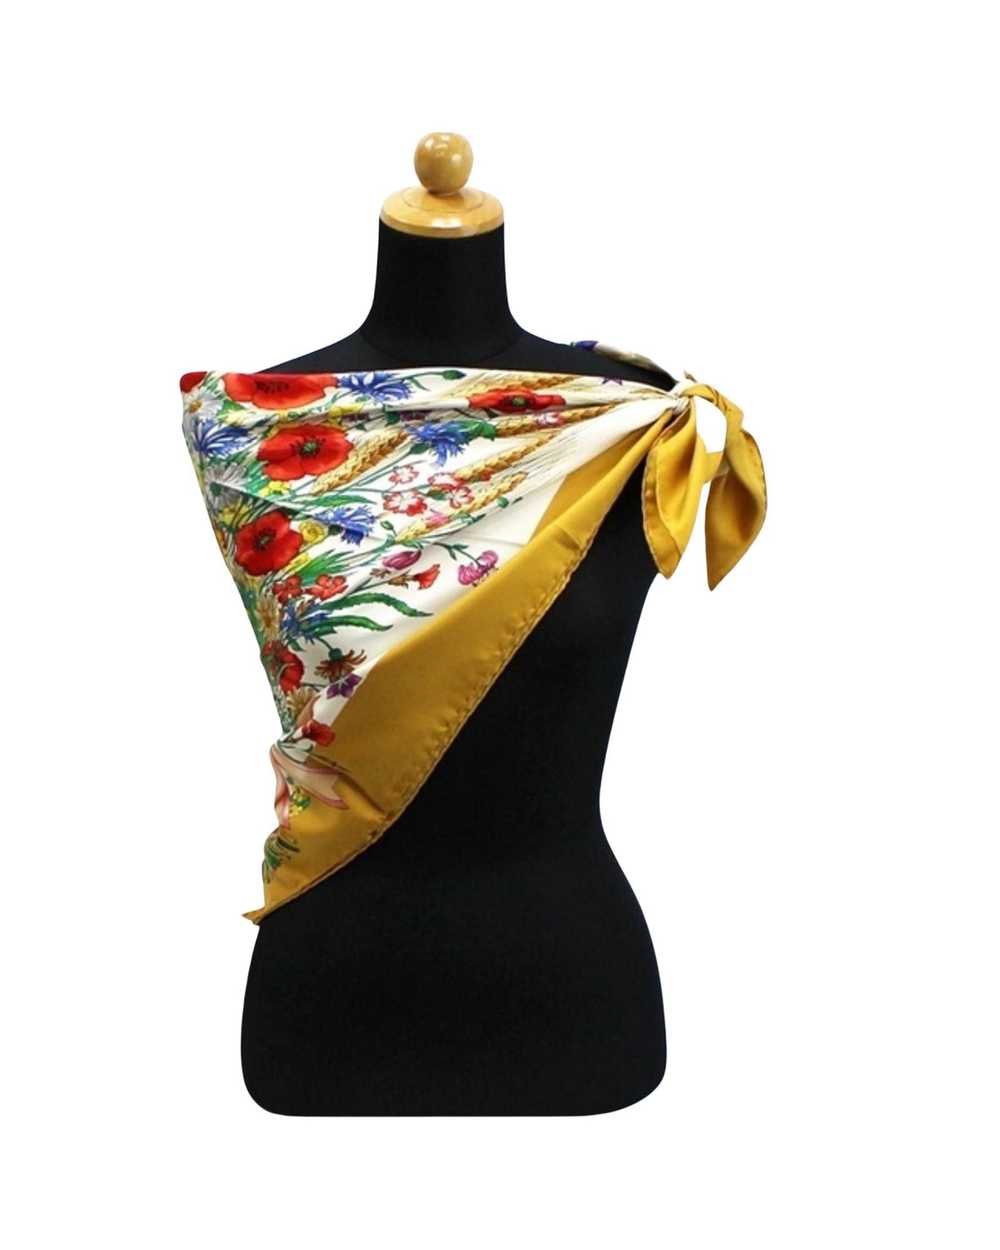 Gucci Multicolour Silk Scarf for Women by Gucci - image 2